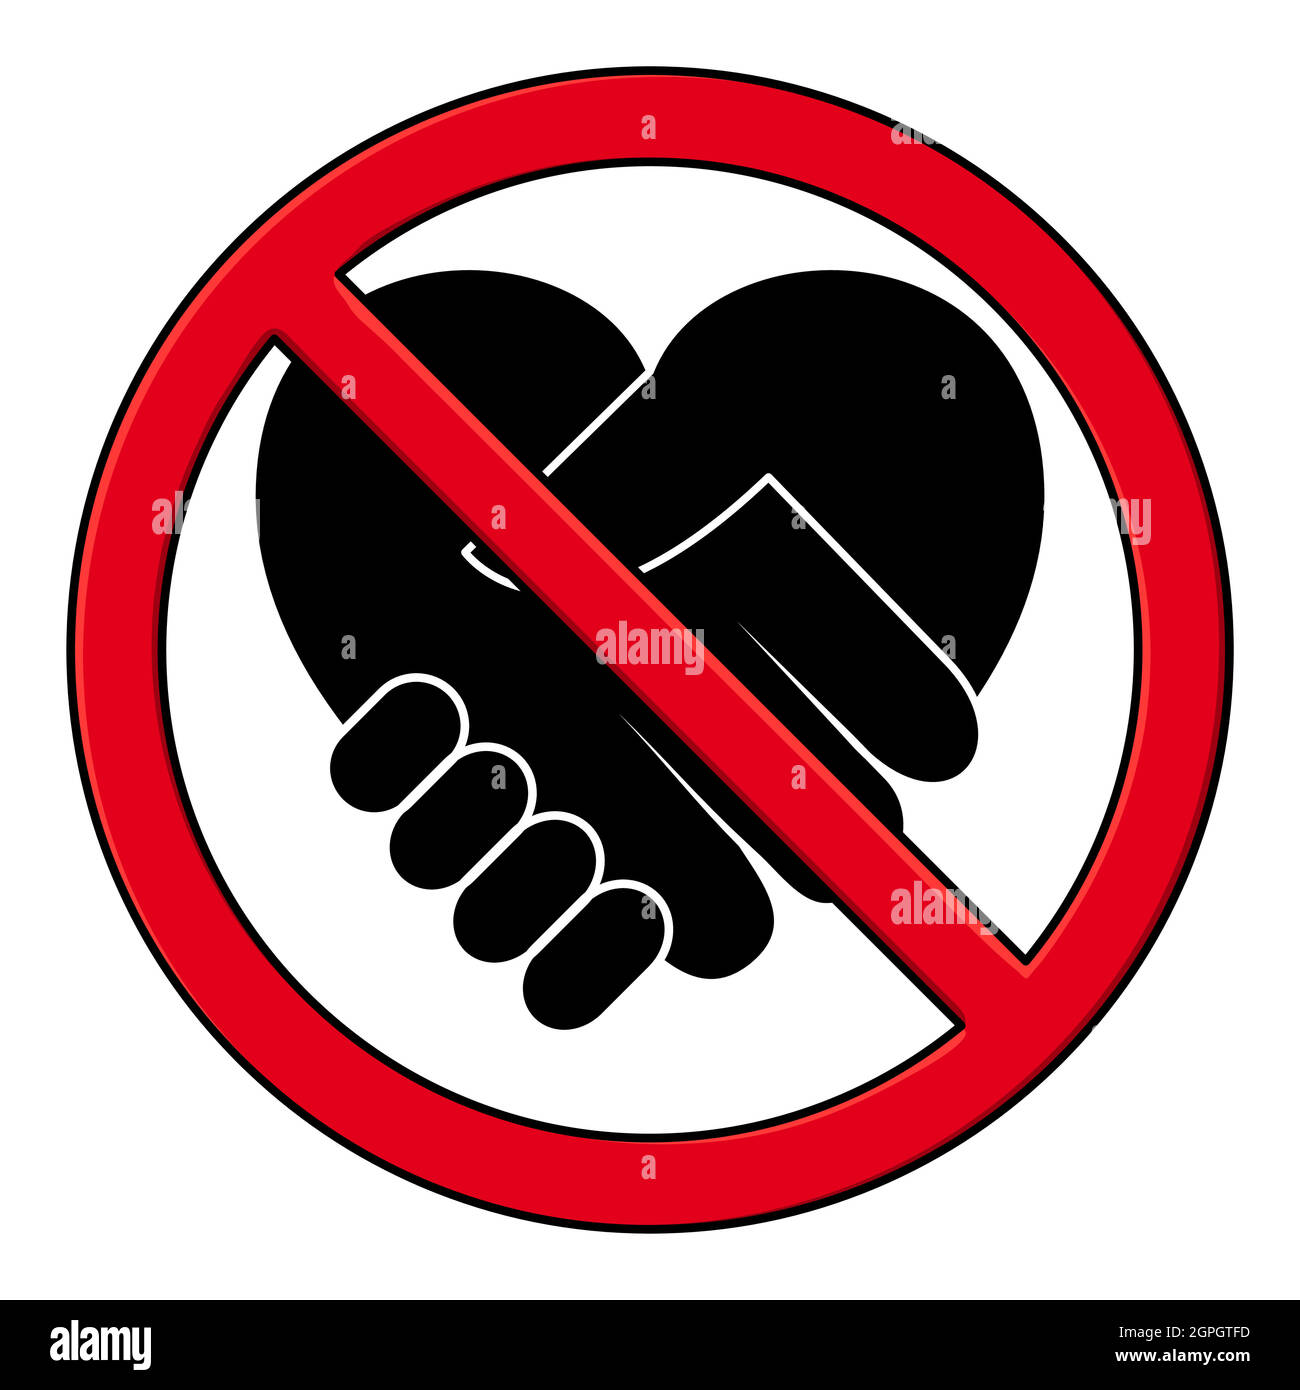 Handshake verboten Piktogramm. Schwarzes Symbol für Handschlag in rot ohne Zeichen. Stock Vektor